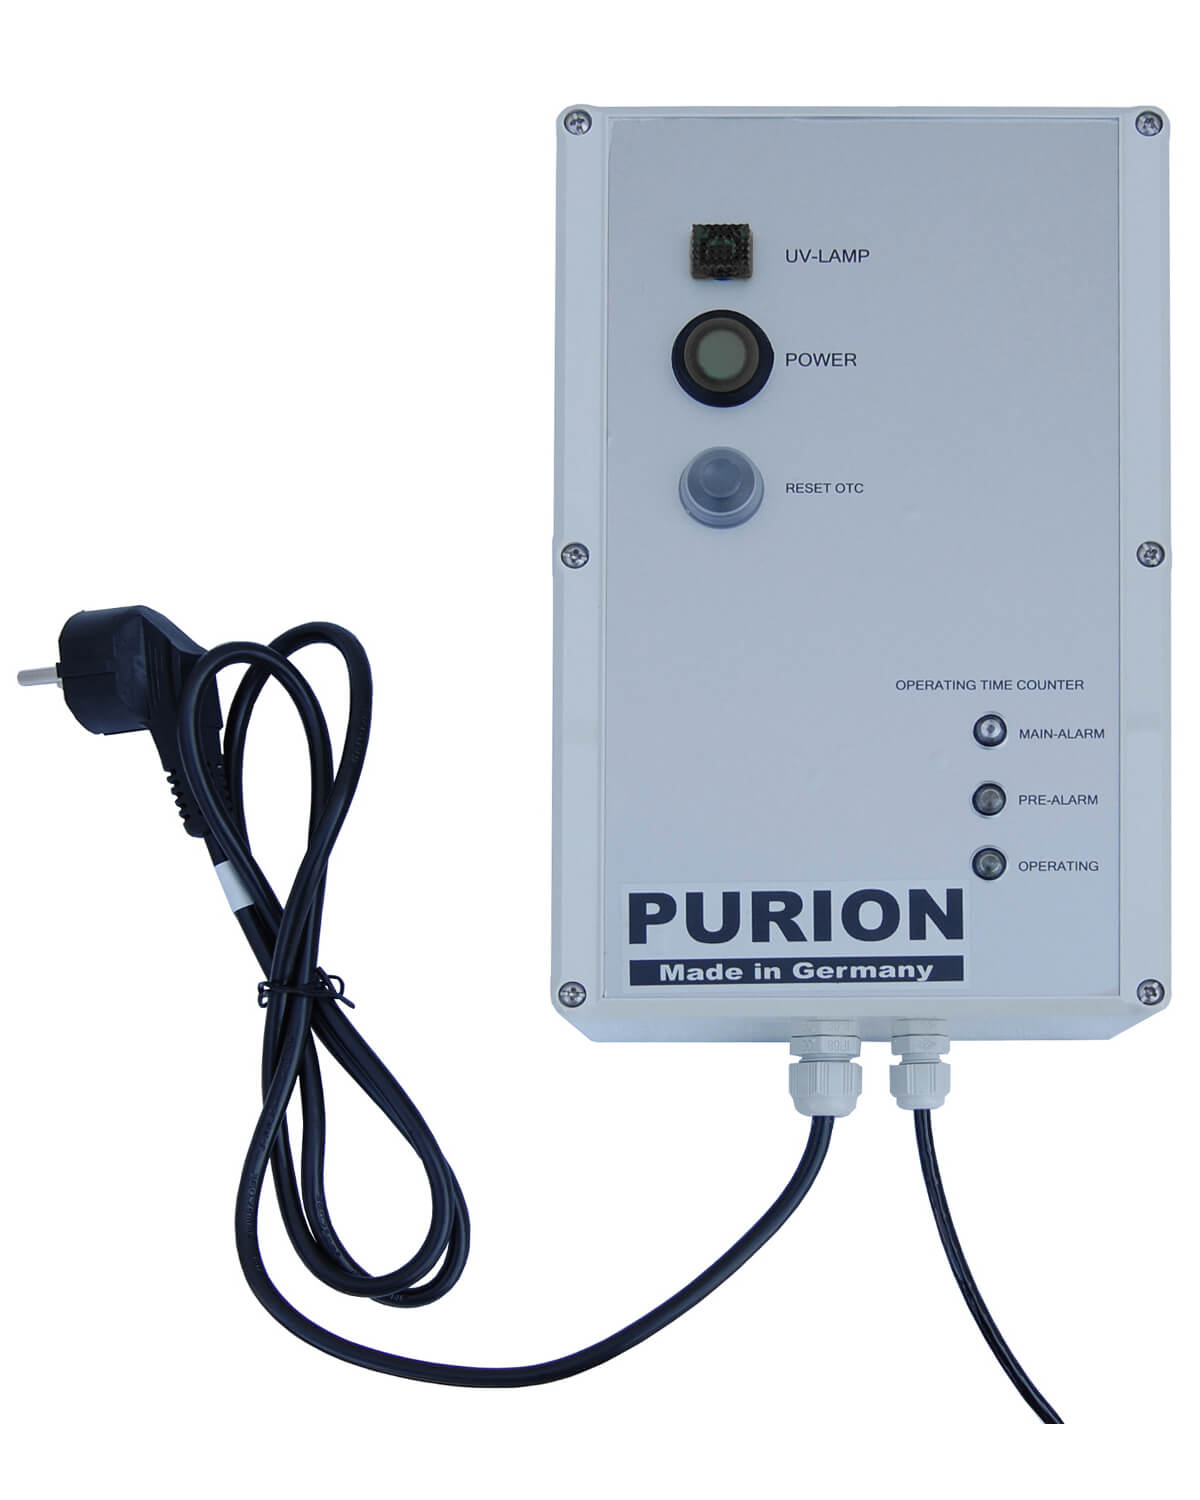 Das PURION 2001 OTC Bundle der PURION GmbH nutzt die UV-C-Desinfektionstechnologie zur wirksamen Bekämpfung von Algenbefall und sorgt für eine reine Umgebung.